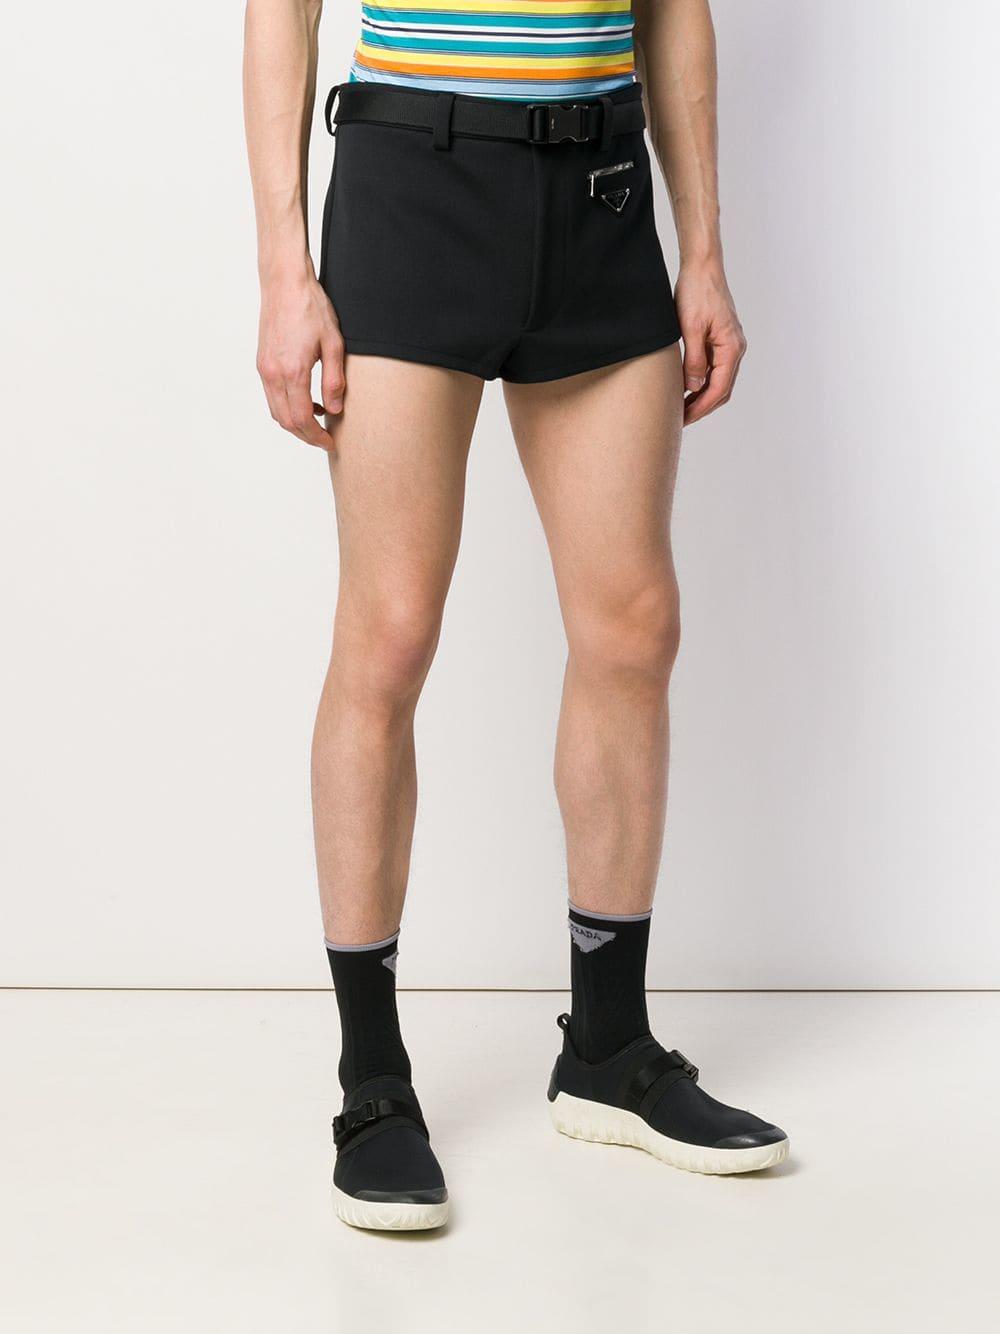 prada shorts mens